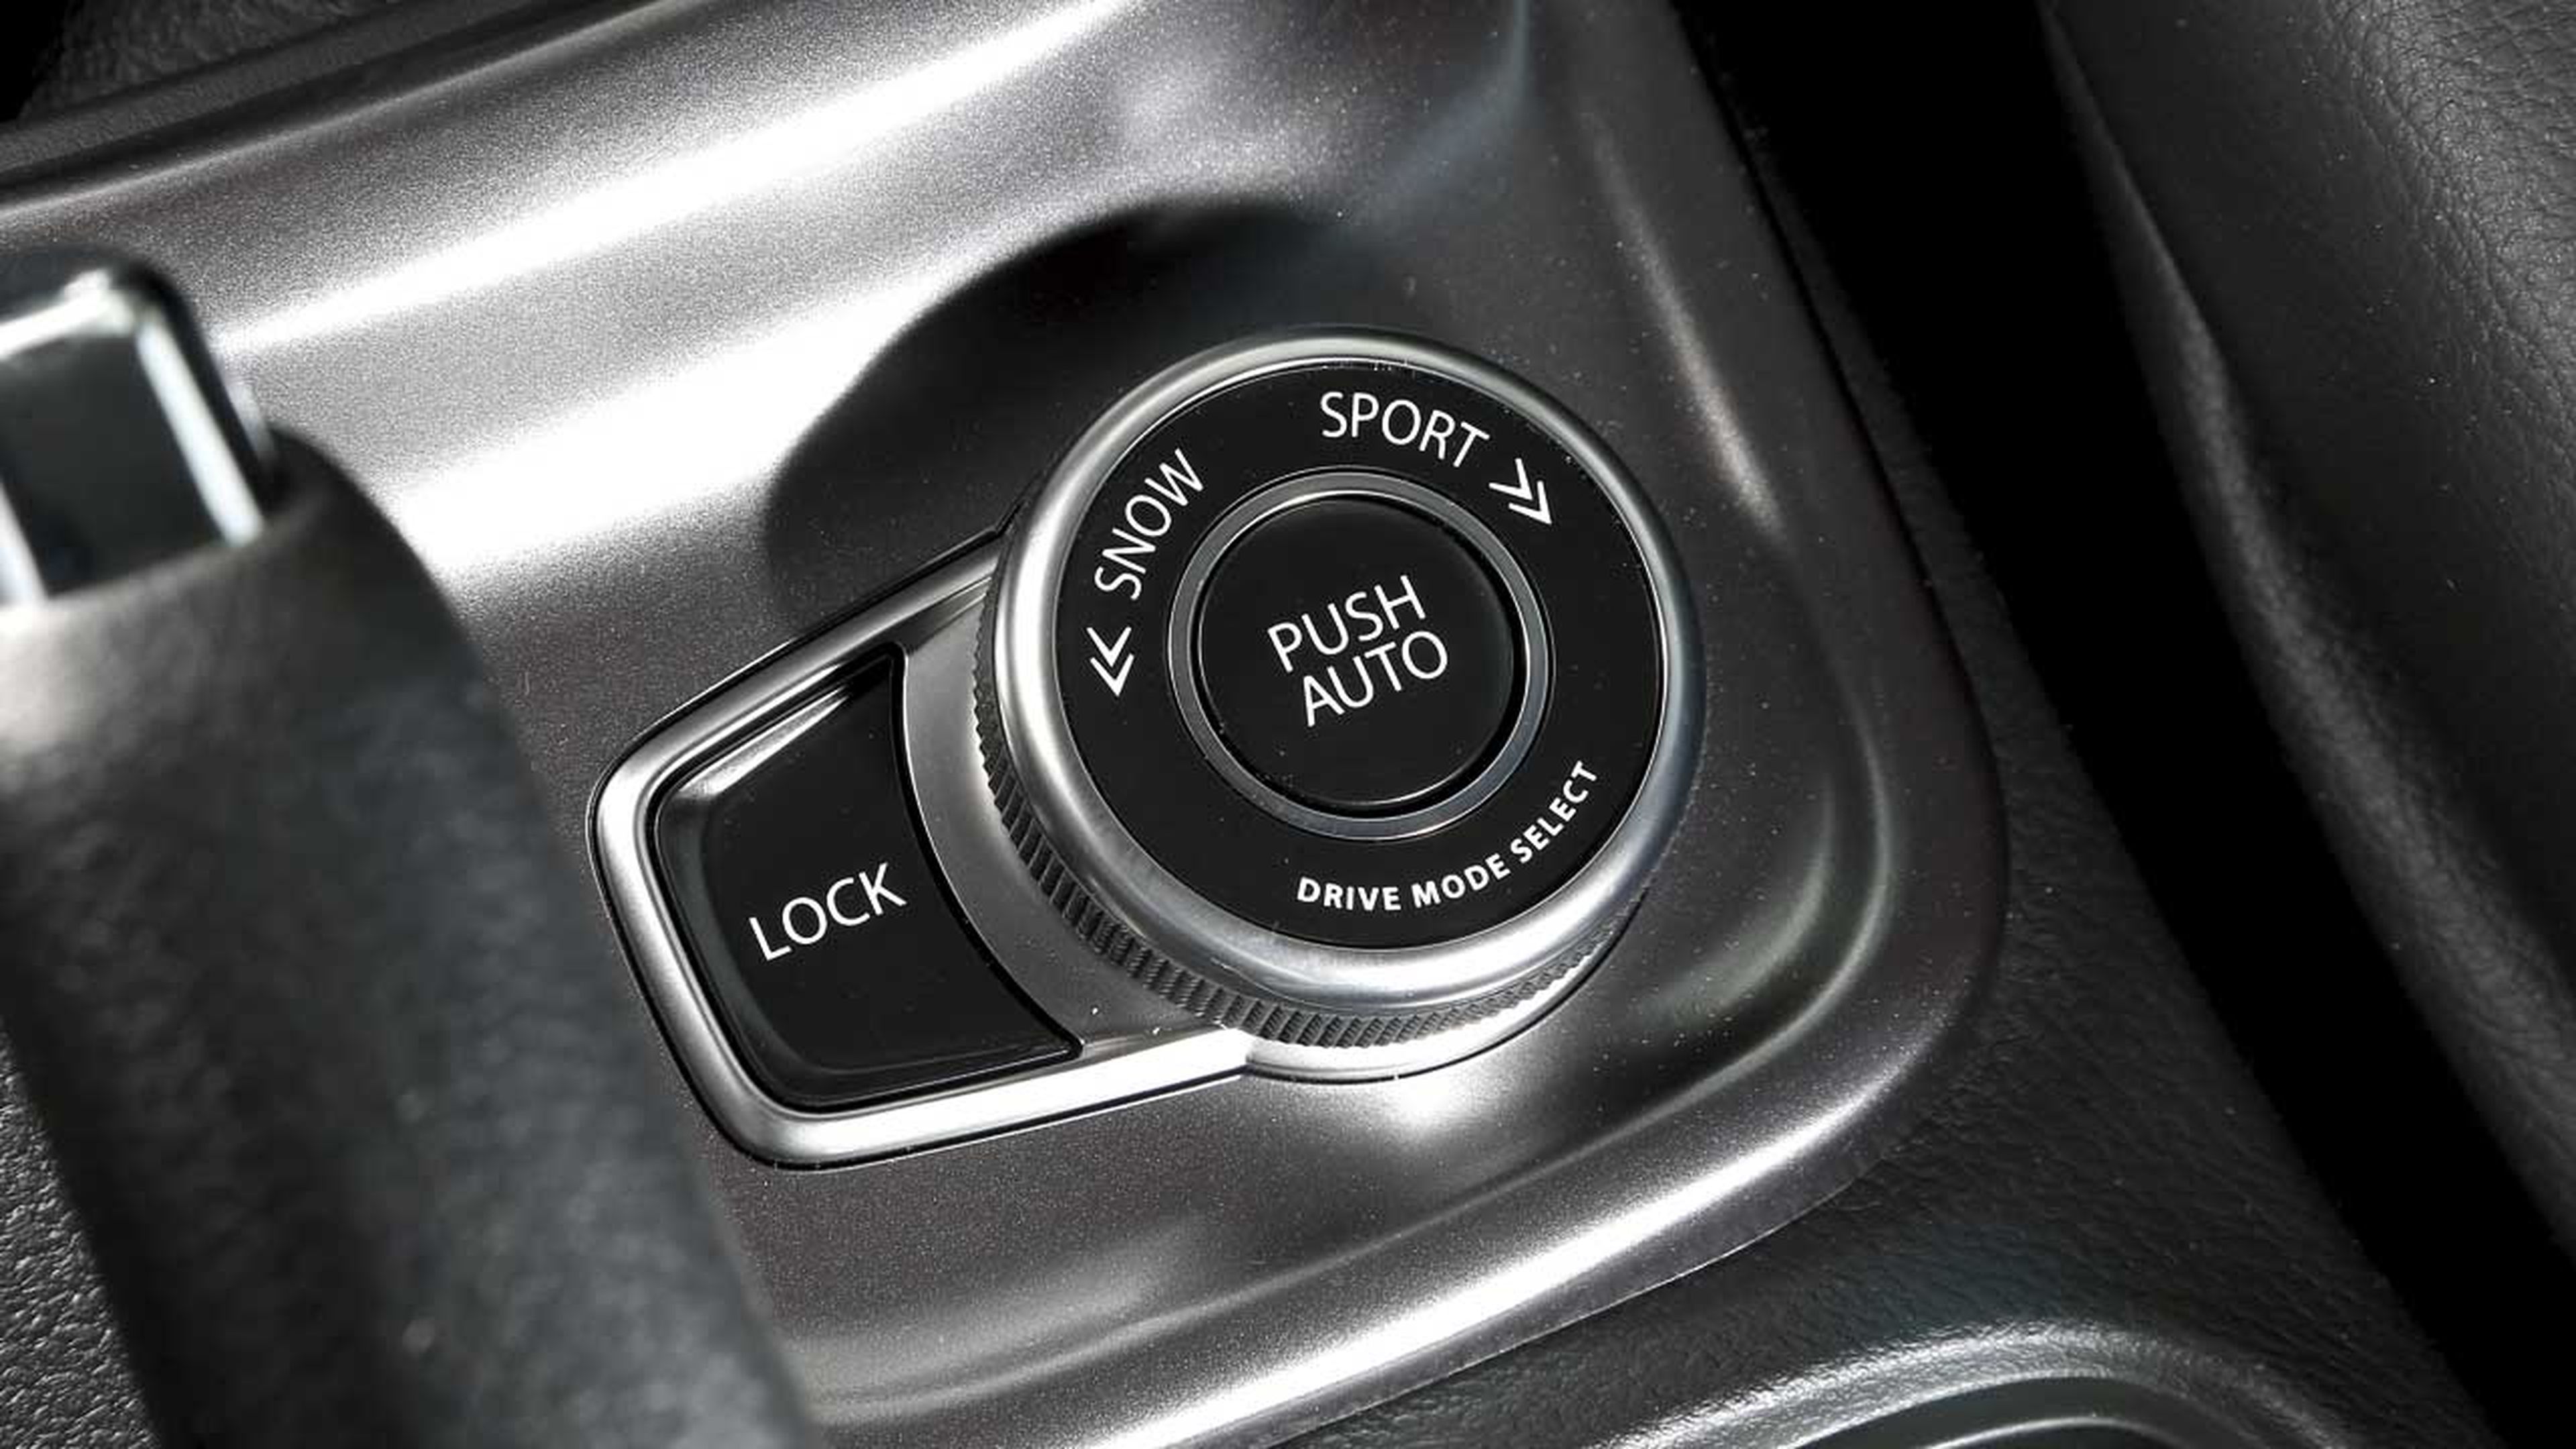 Esta versión 4WD cuenta con la ruleta de tracción AllGrip, que permite al conductor elegir entre cuatro modos diferentes (Auto, Sport, Snow, y Lock) y le informa del seleccionado en la pantalla central del cuadro de mandos